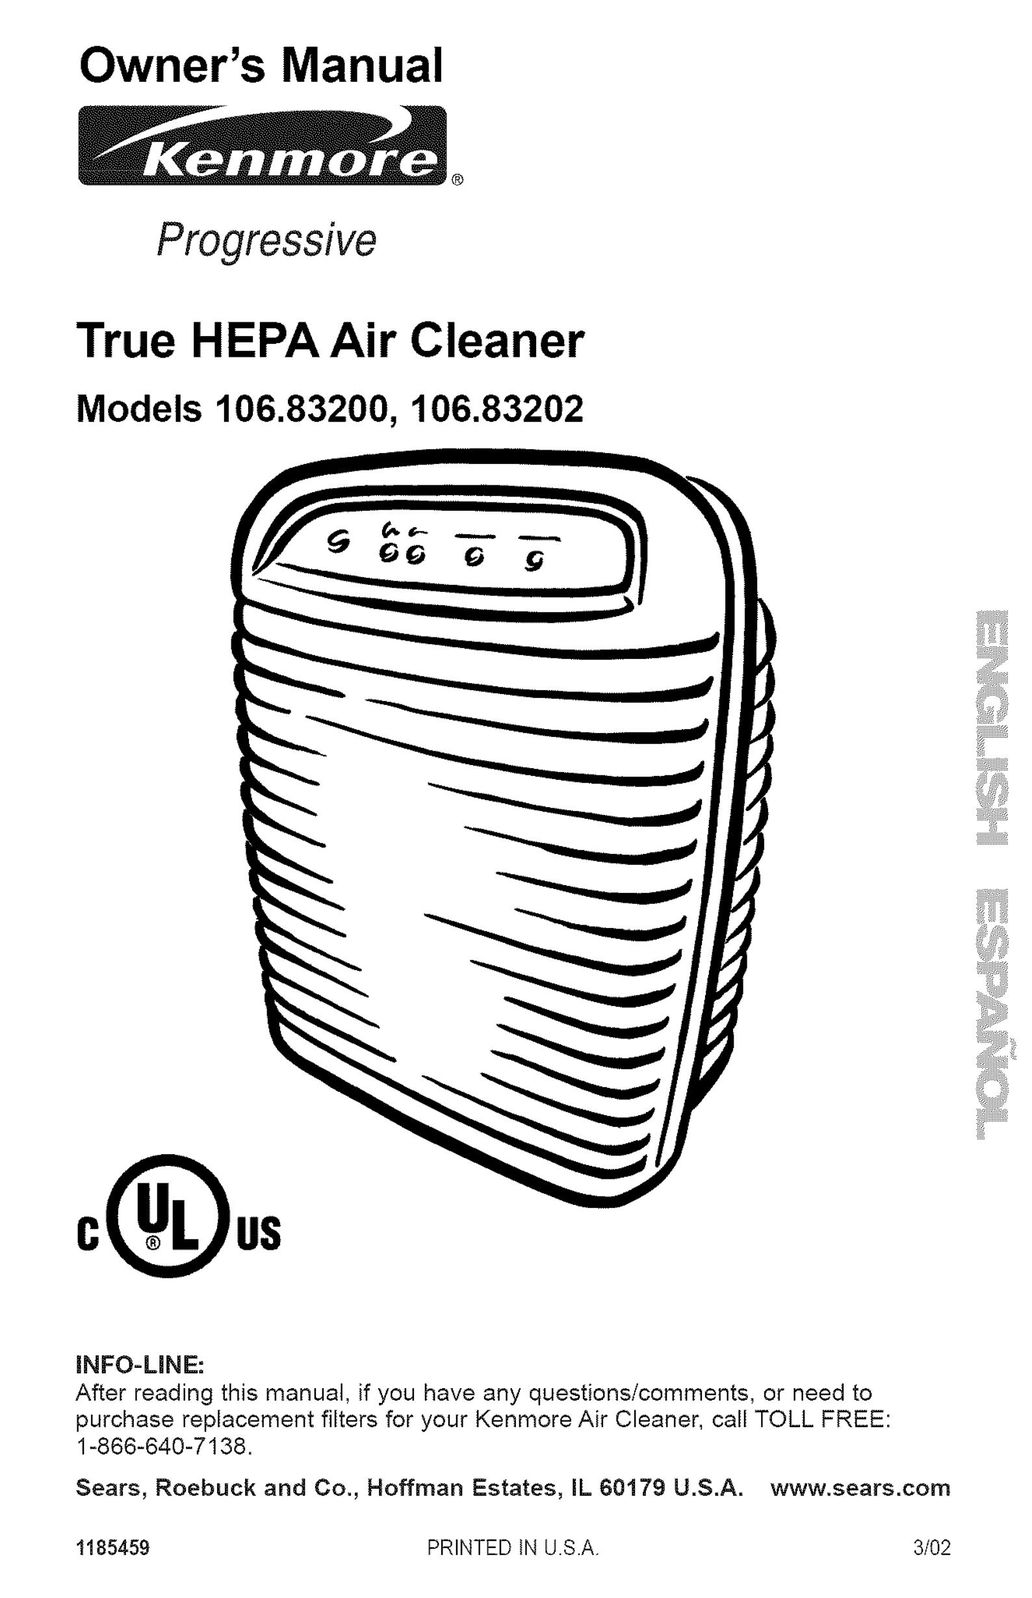 Kenmore 106.83202 Air Cleaner User Manual